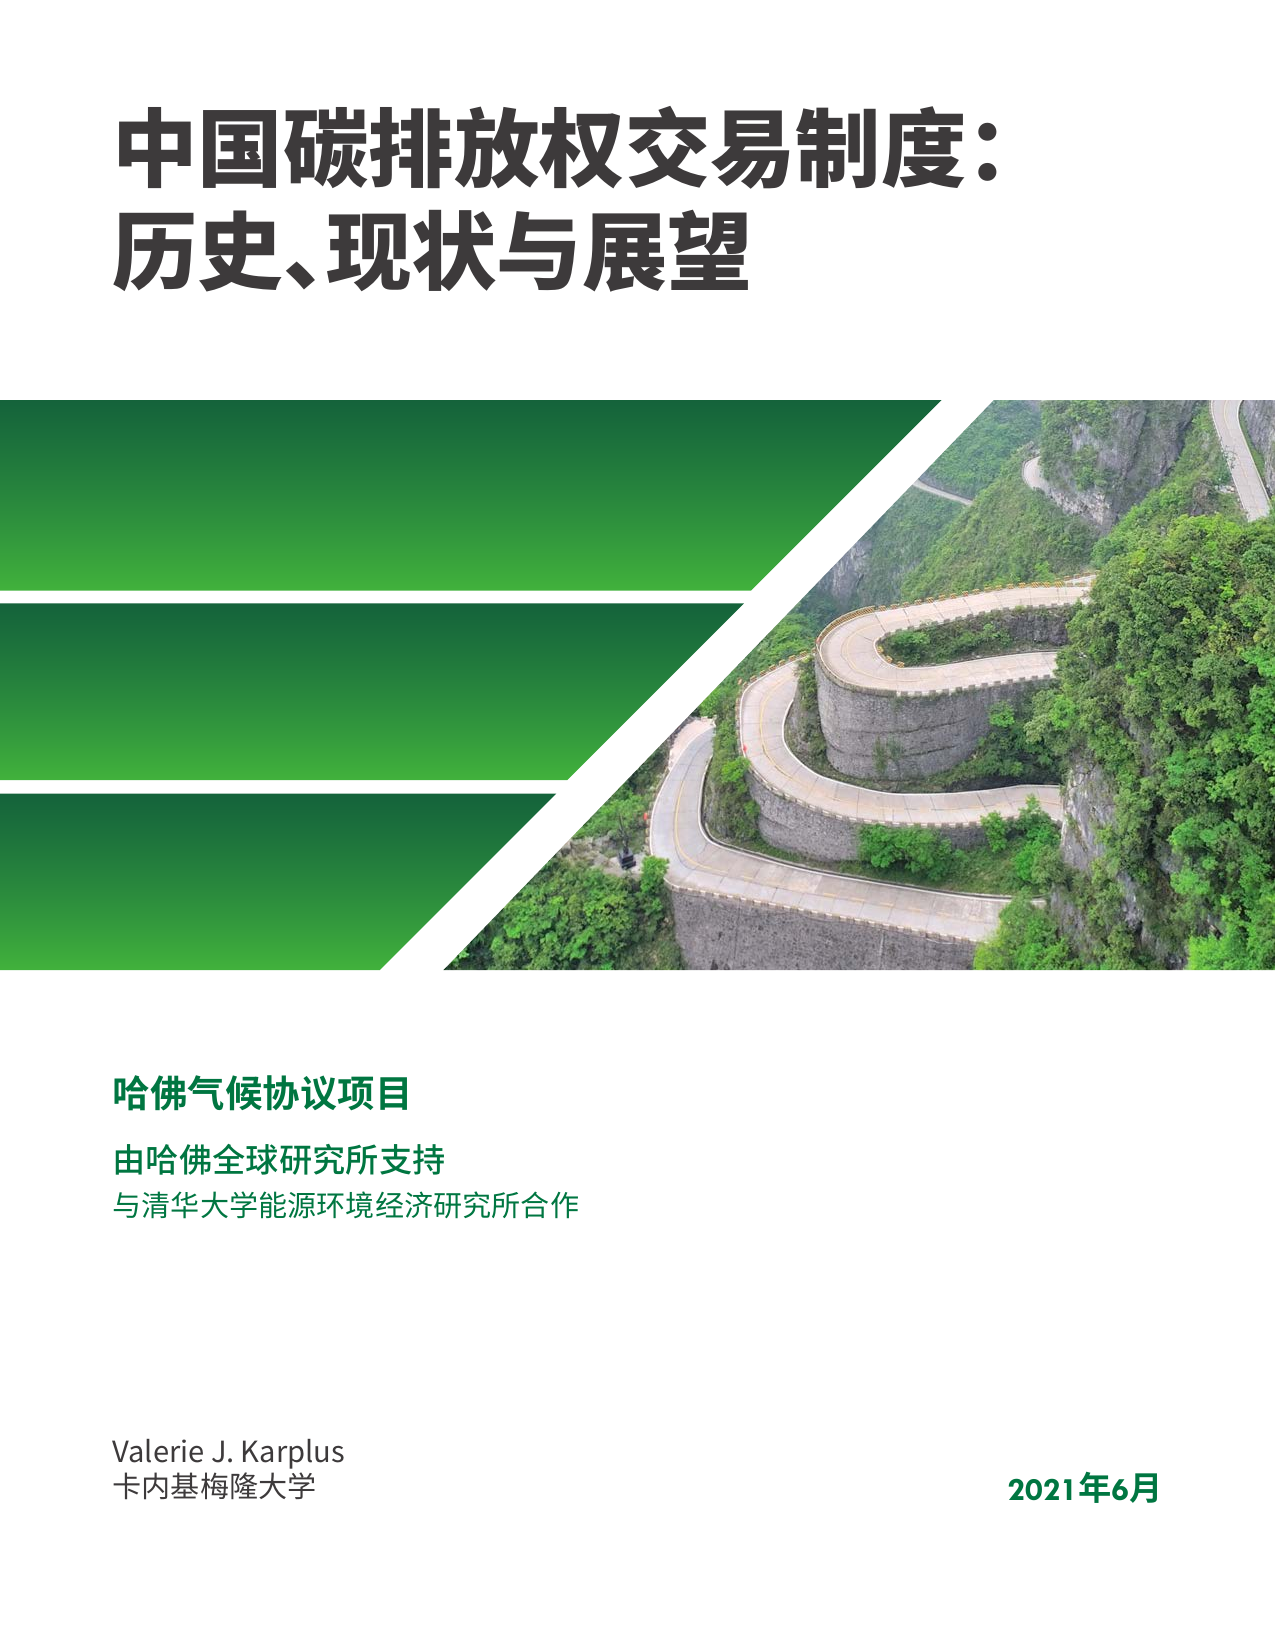 中国二氧化碳排放交易制度：历史、现状与展望（中英）-哈佛大学肯尼迪学院-2021.6-40页